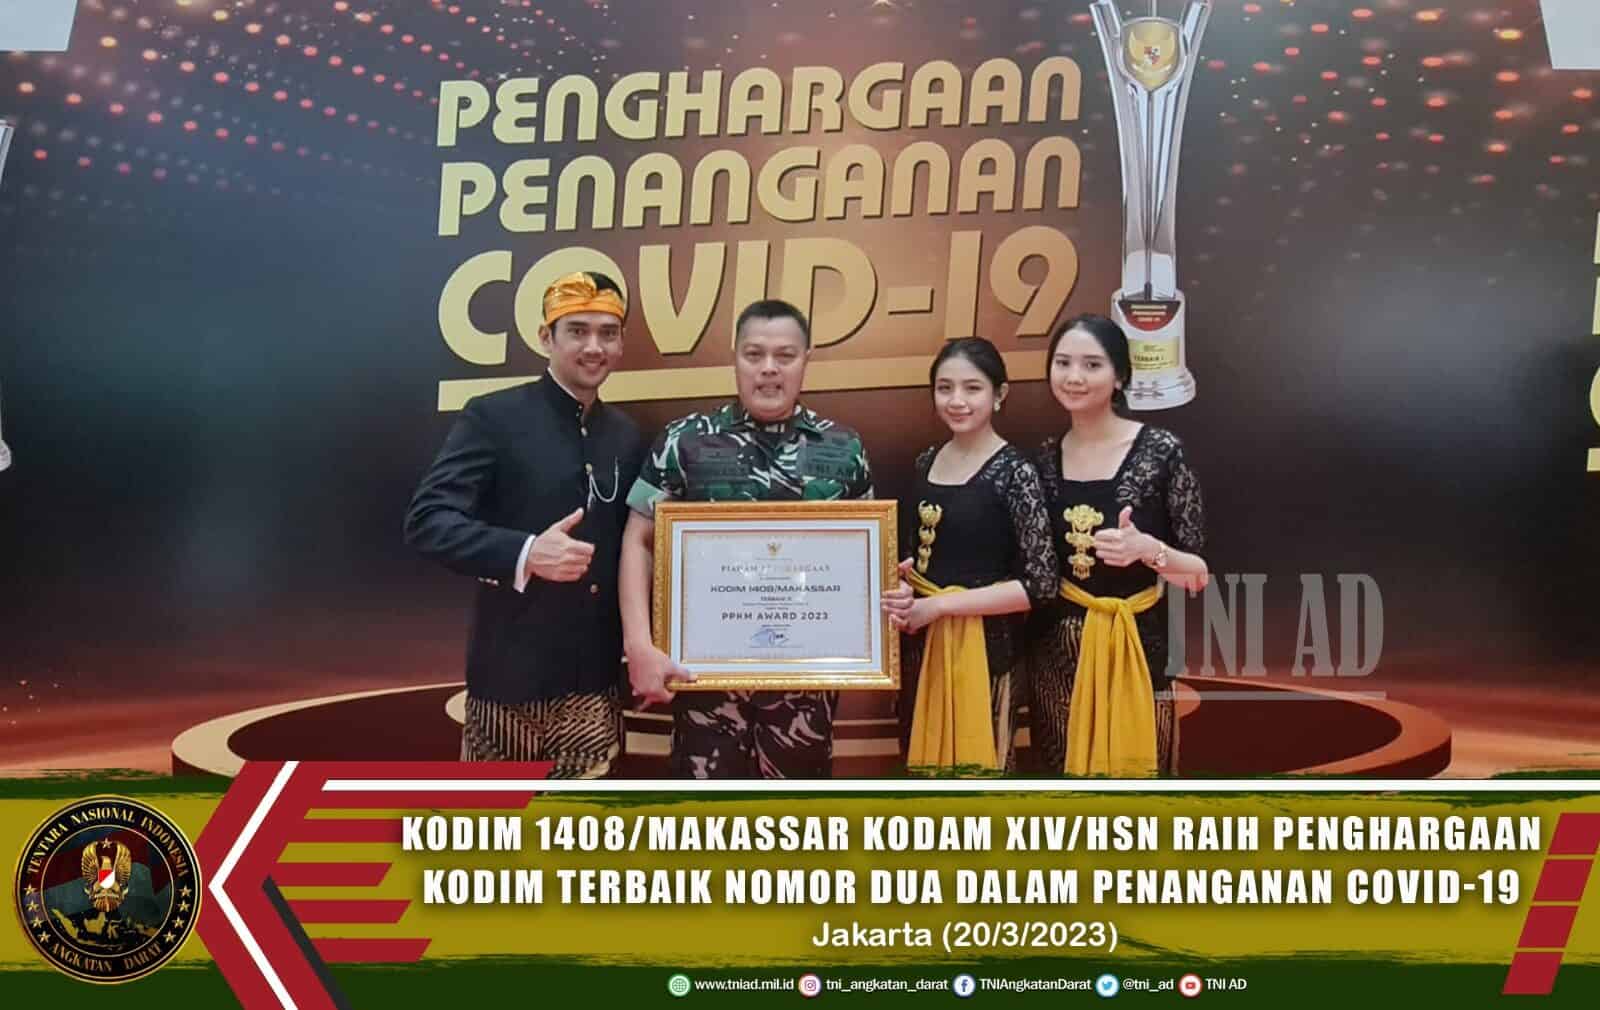 Kodim 1408/Makassar Kodam XIV/Hsn Raih Penghargaan Kodim Terbaik Nomor Dua dalam Penanganan Covid-19